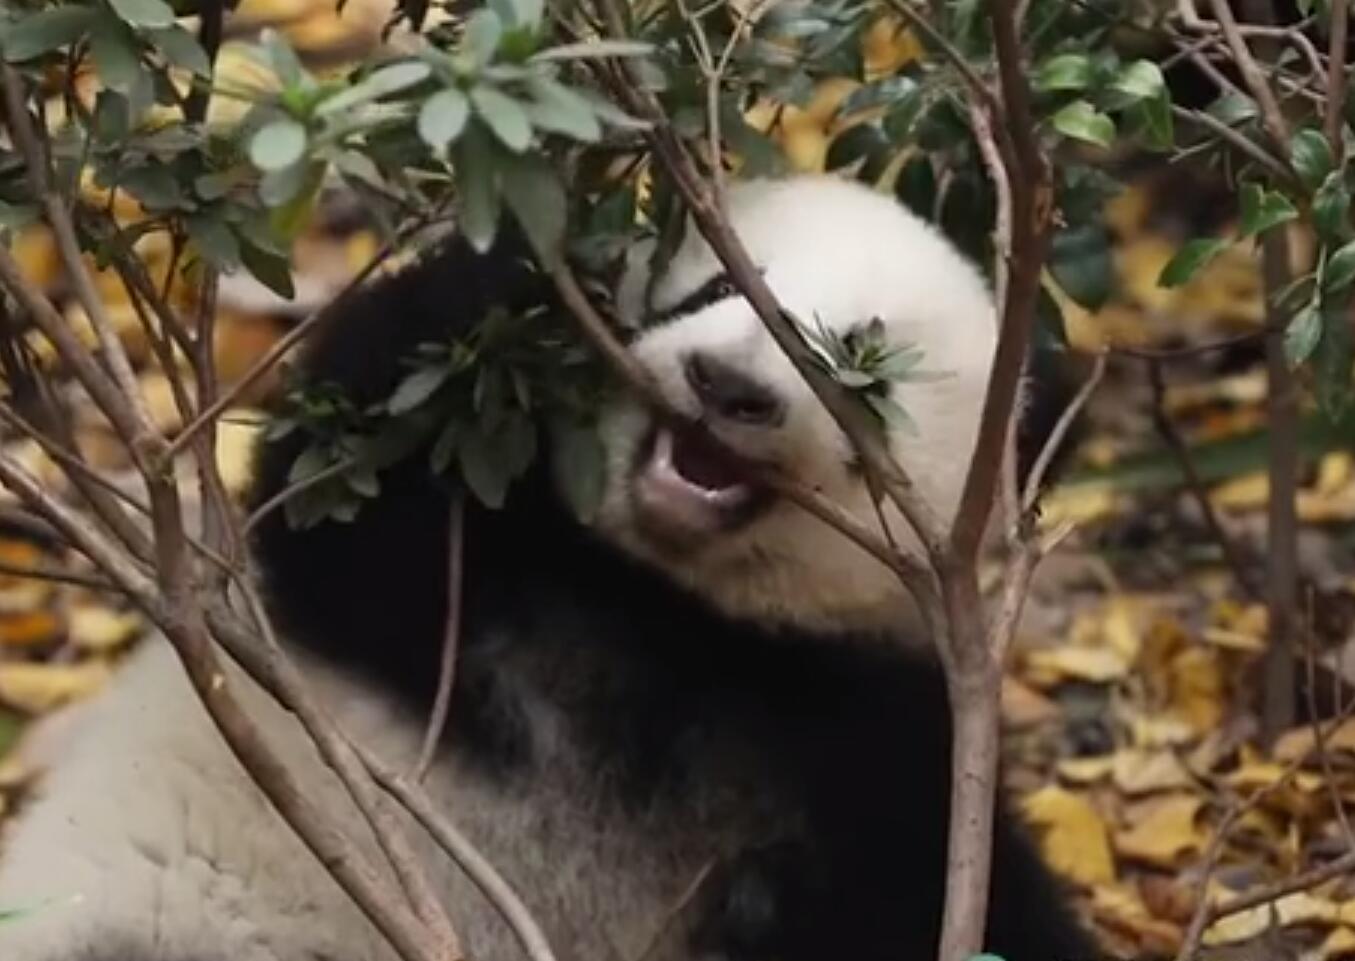 Baby panda's special molar rod